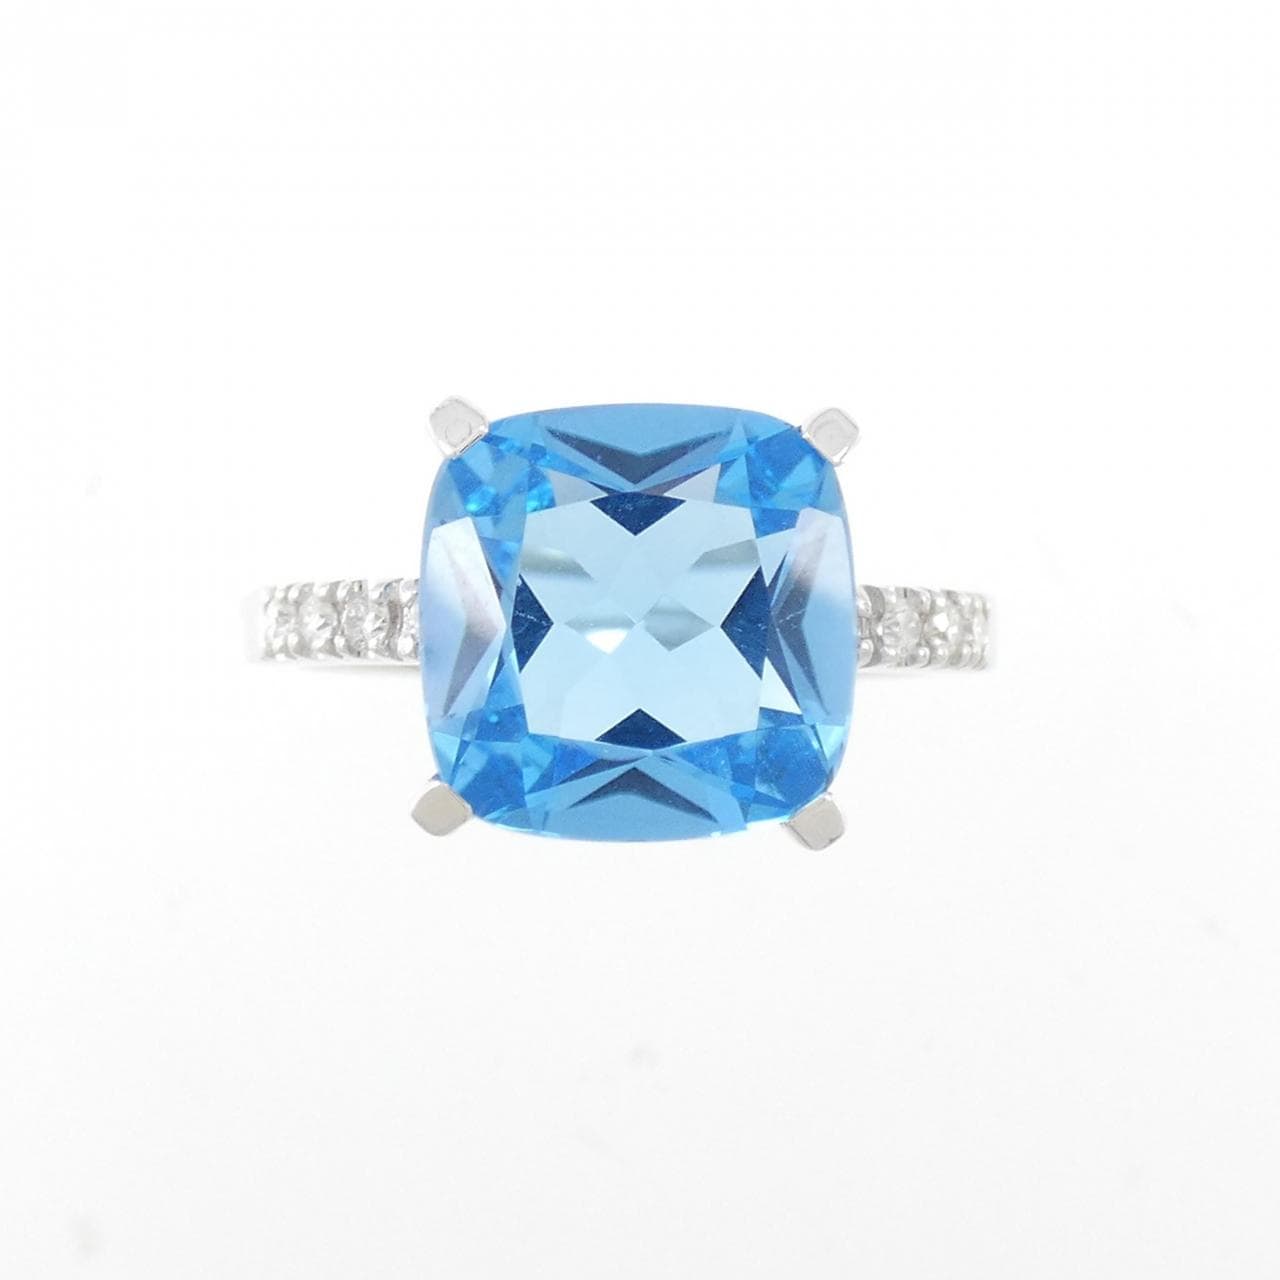 K18WG 藍色托帕石戒指